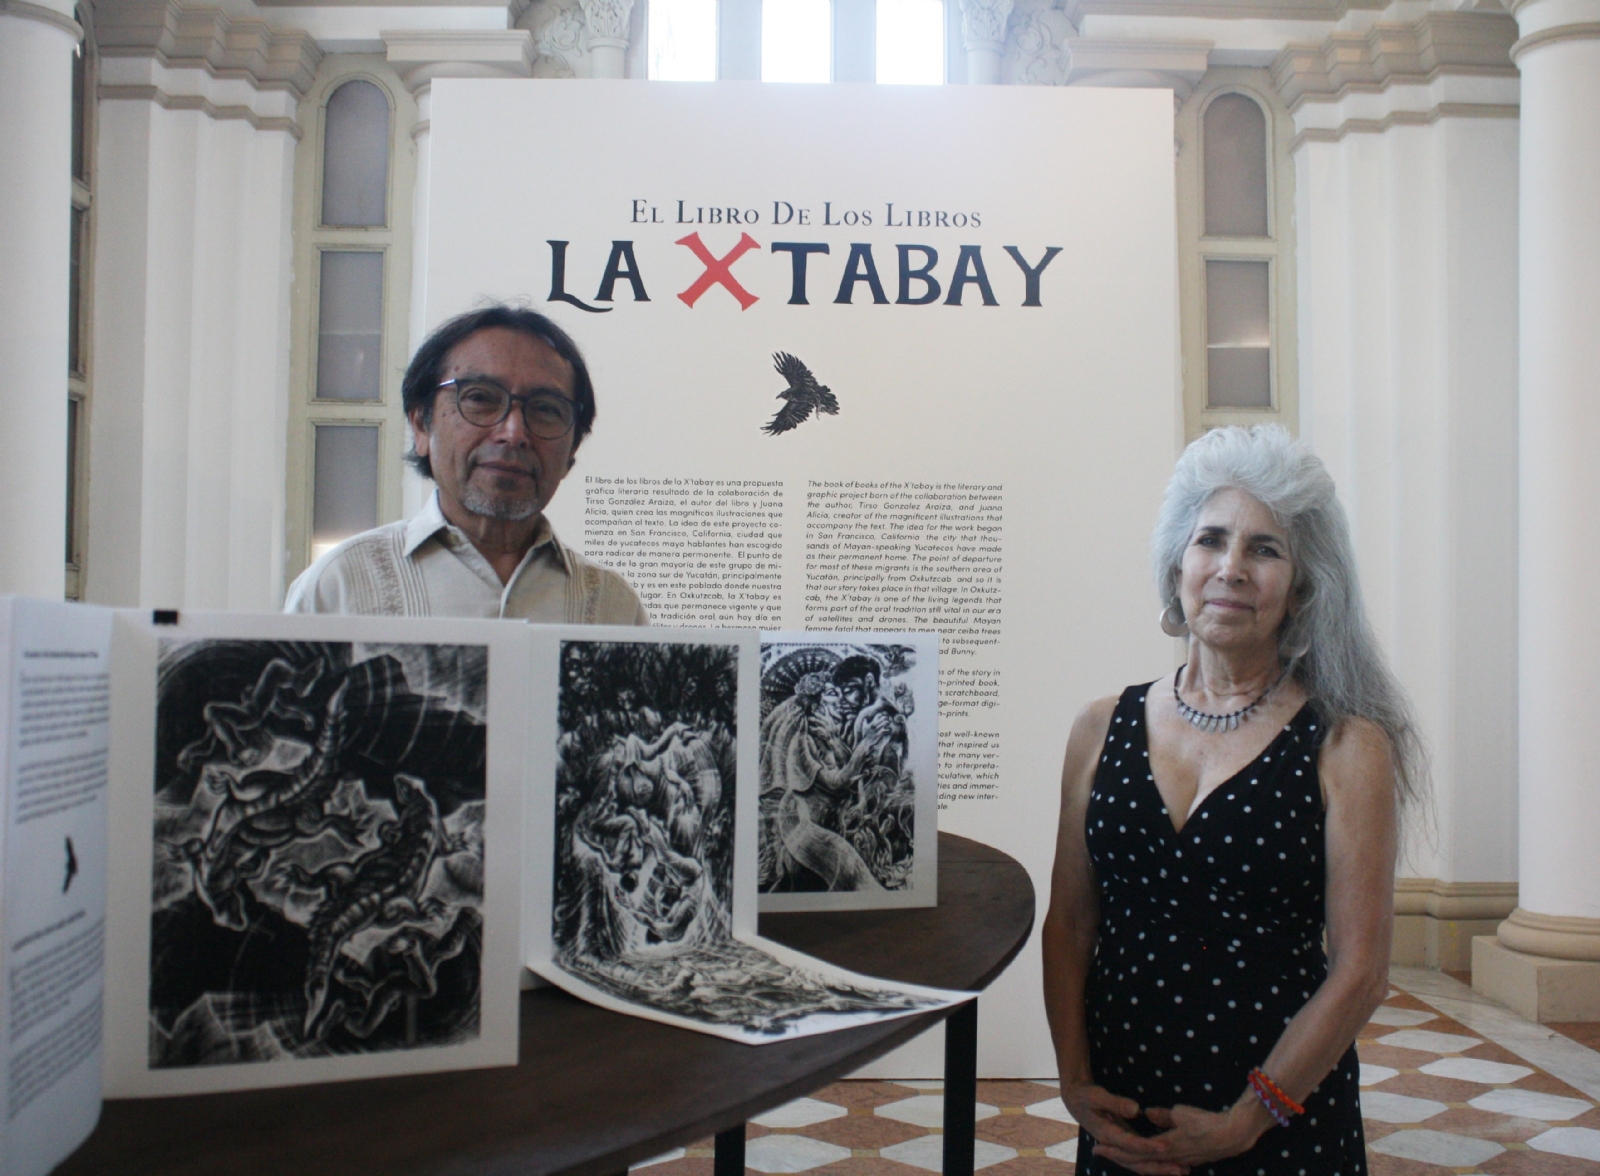 El escritor Tirso Araiza y la artista Juana Alicia tendrán un conversatorio el jueves sobre El Libro de los Libros de la X’tabay